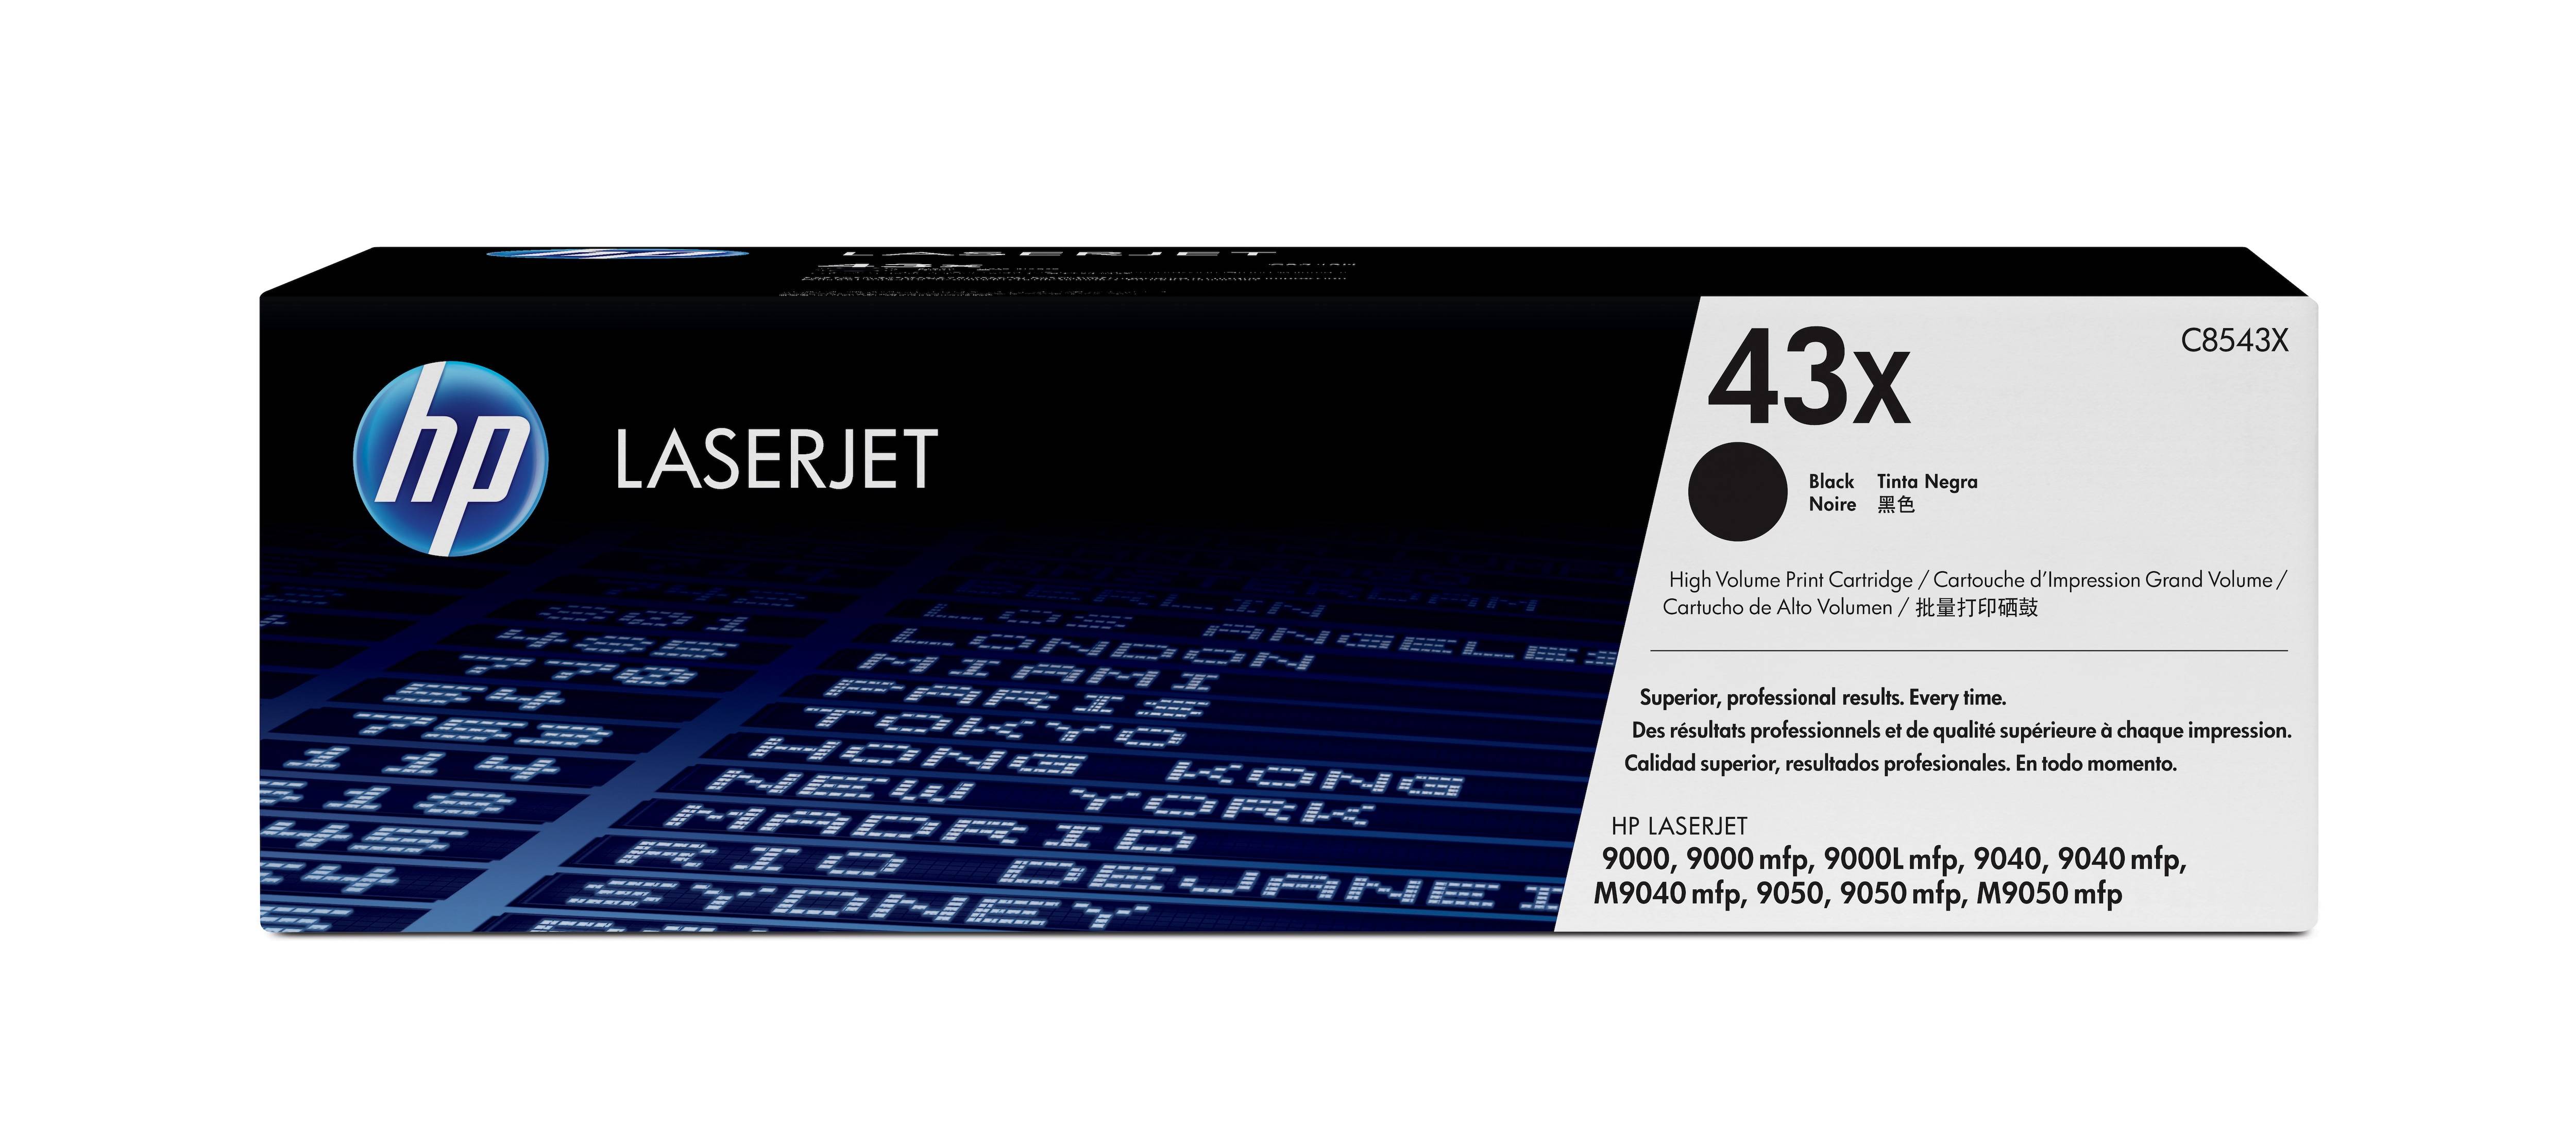 Rca Informatique - Image du produit : TONER CARTRIDGE 43X BLACK POUR LASERJET 9000